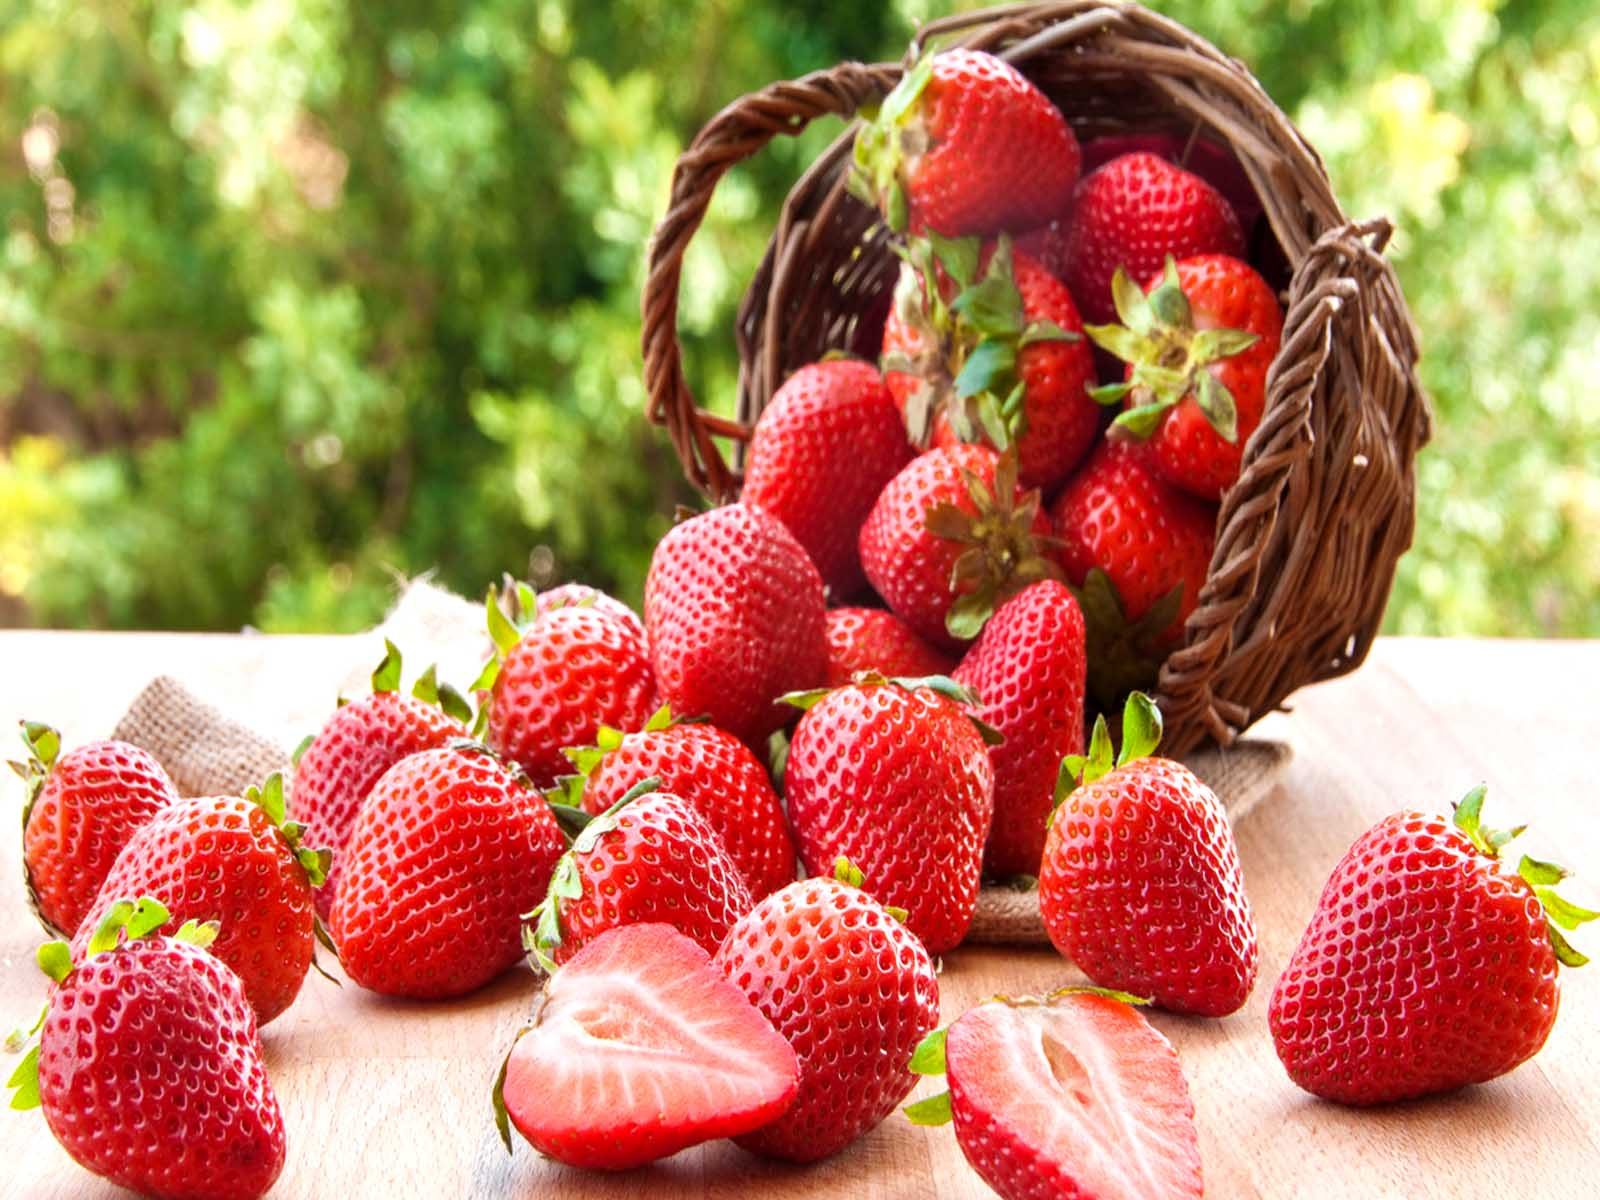 Strawberry Is The Fruit of Love: ਪੱਛਮ 'ਚ ਪਿਆਰ ਦਾ ਫਲ ਹੈ ਮੰਨਿਆ ਜਾਂਦਾ ਹੈ ਸਟ੍ਰਾਬੇਰੀ, ਜਾਣੋ ਕੁਝ ਦਿਲਚਸਪ ਗੱਲਾਂ 